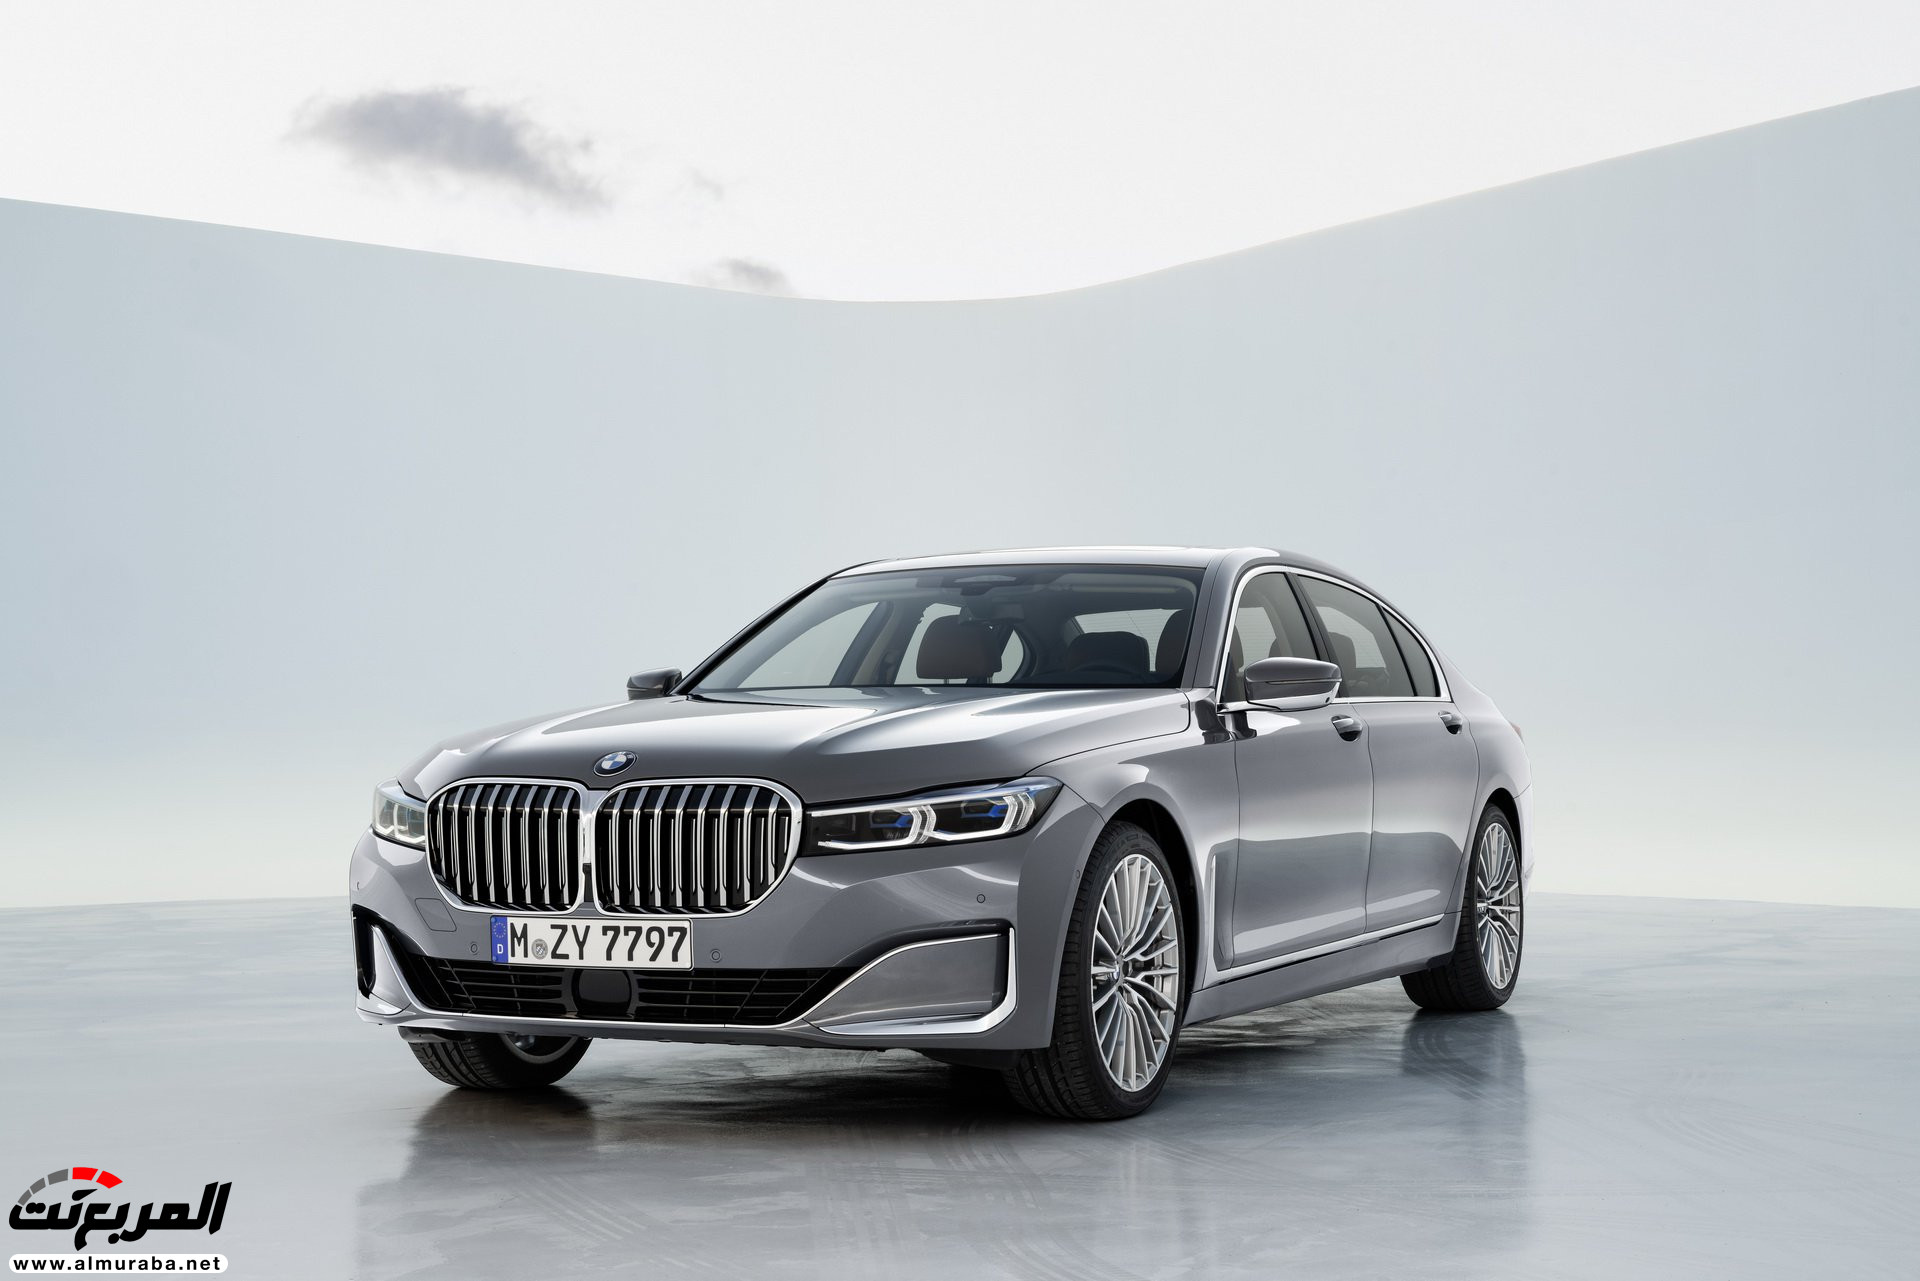 بي ام دبليو الفئة السابعة 2020 المحدثة تكشف نفسها رسمياً "صور ومواصفات" BMW 7 Series 230